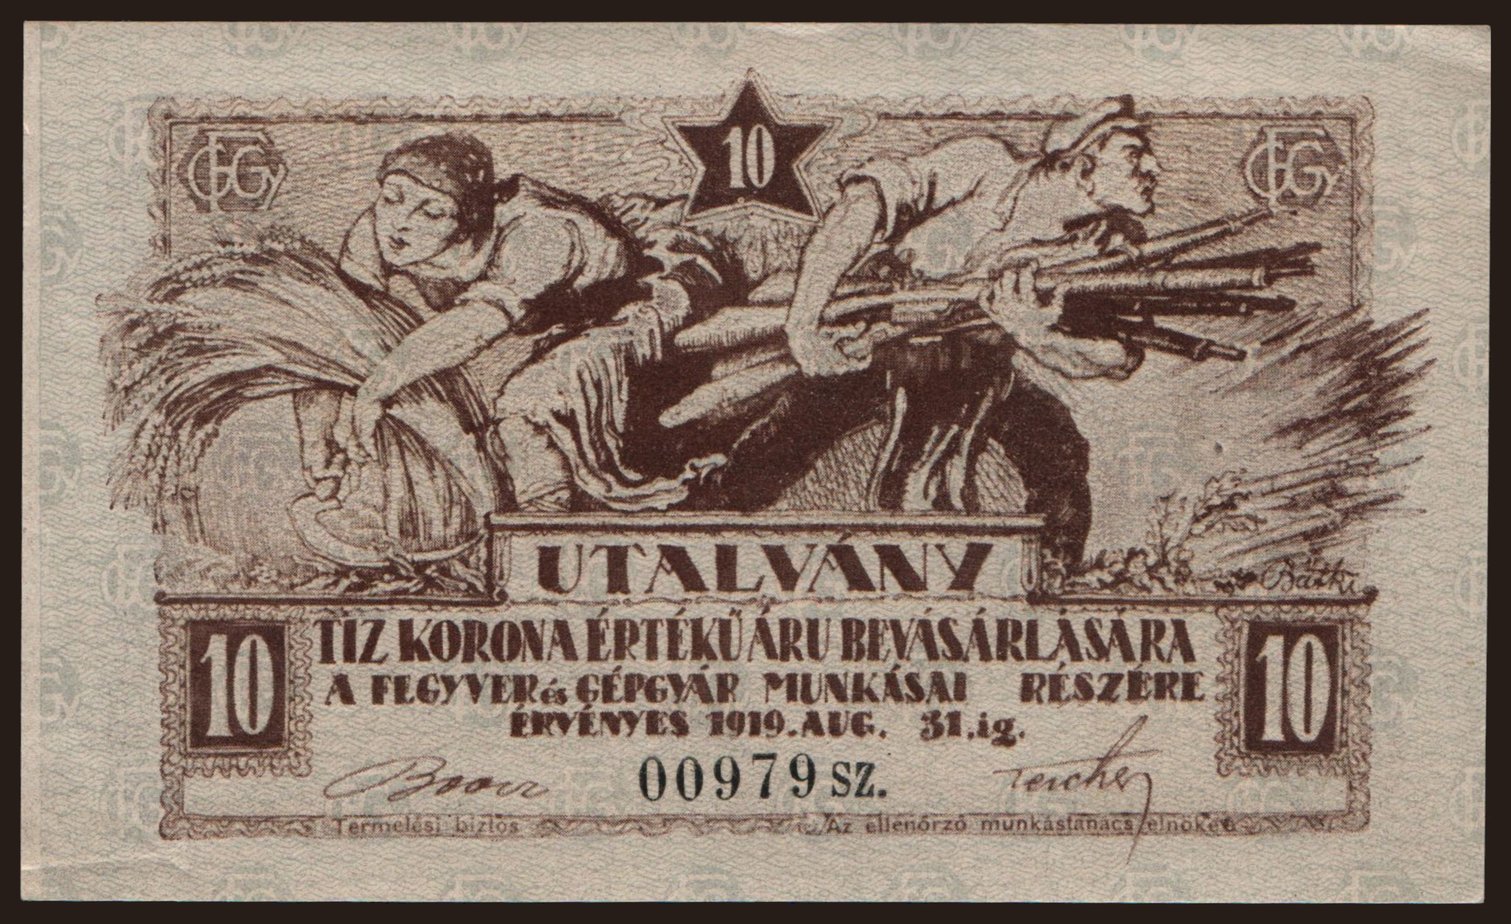 Budapest/ Fegyver és Gépgyár, 10 korona, 1919